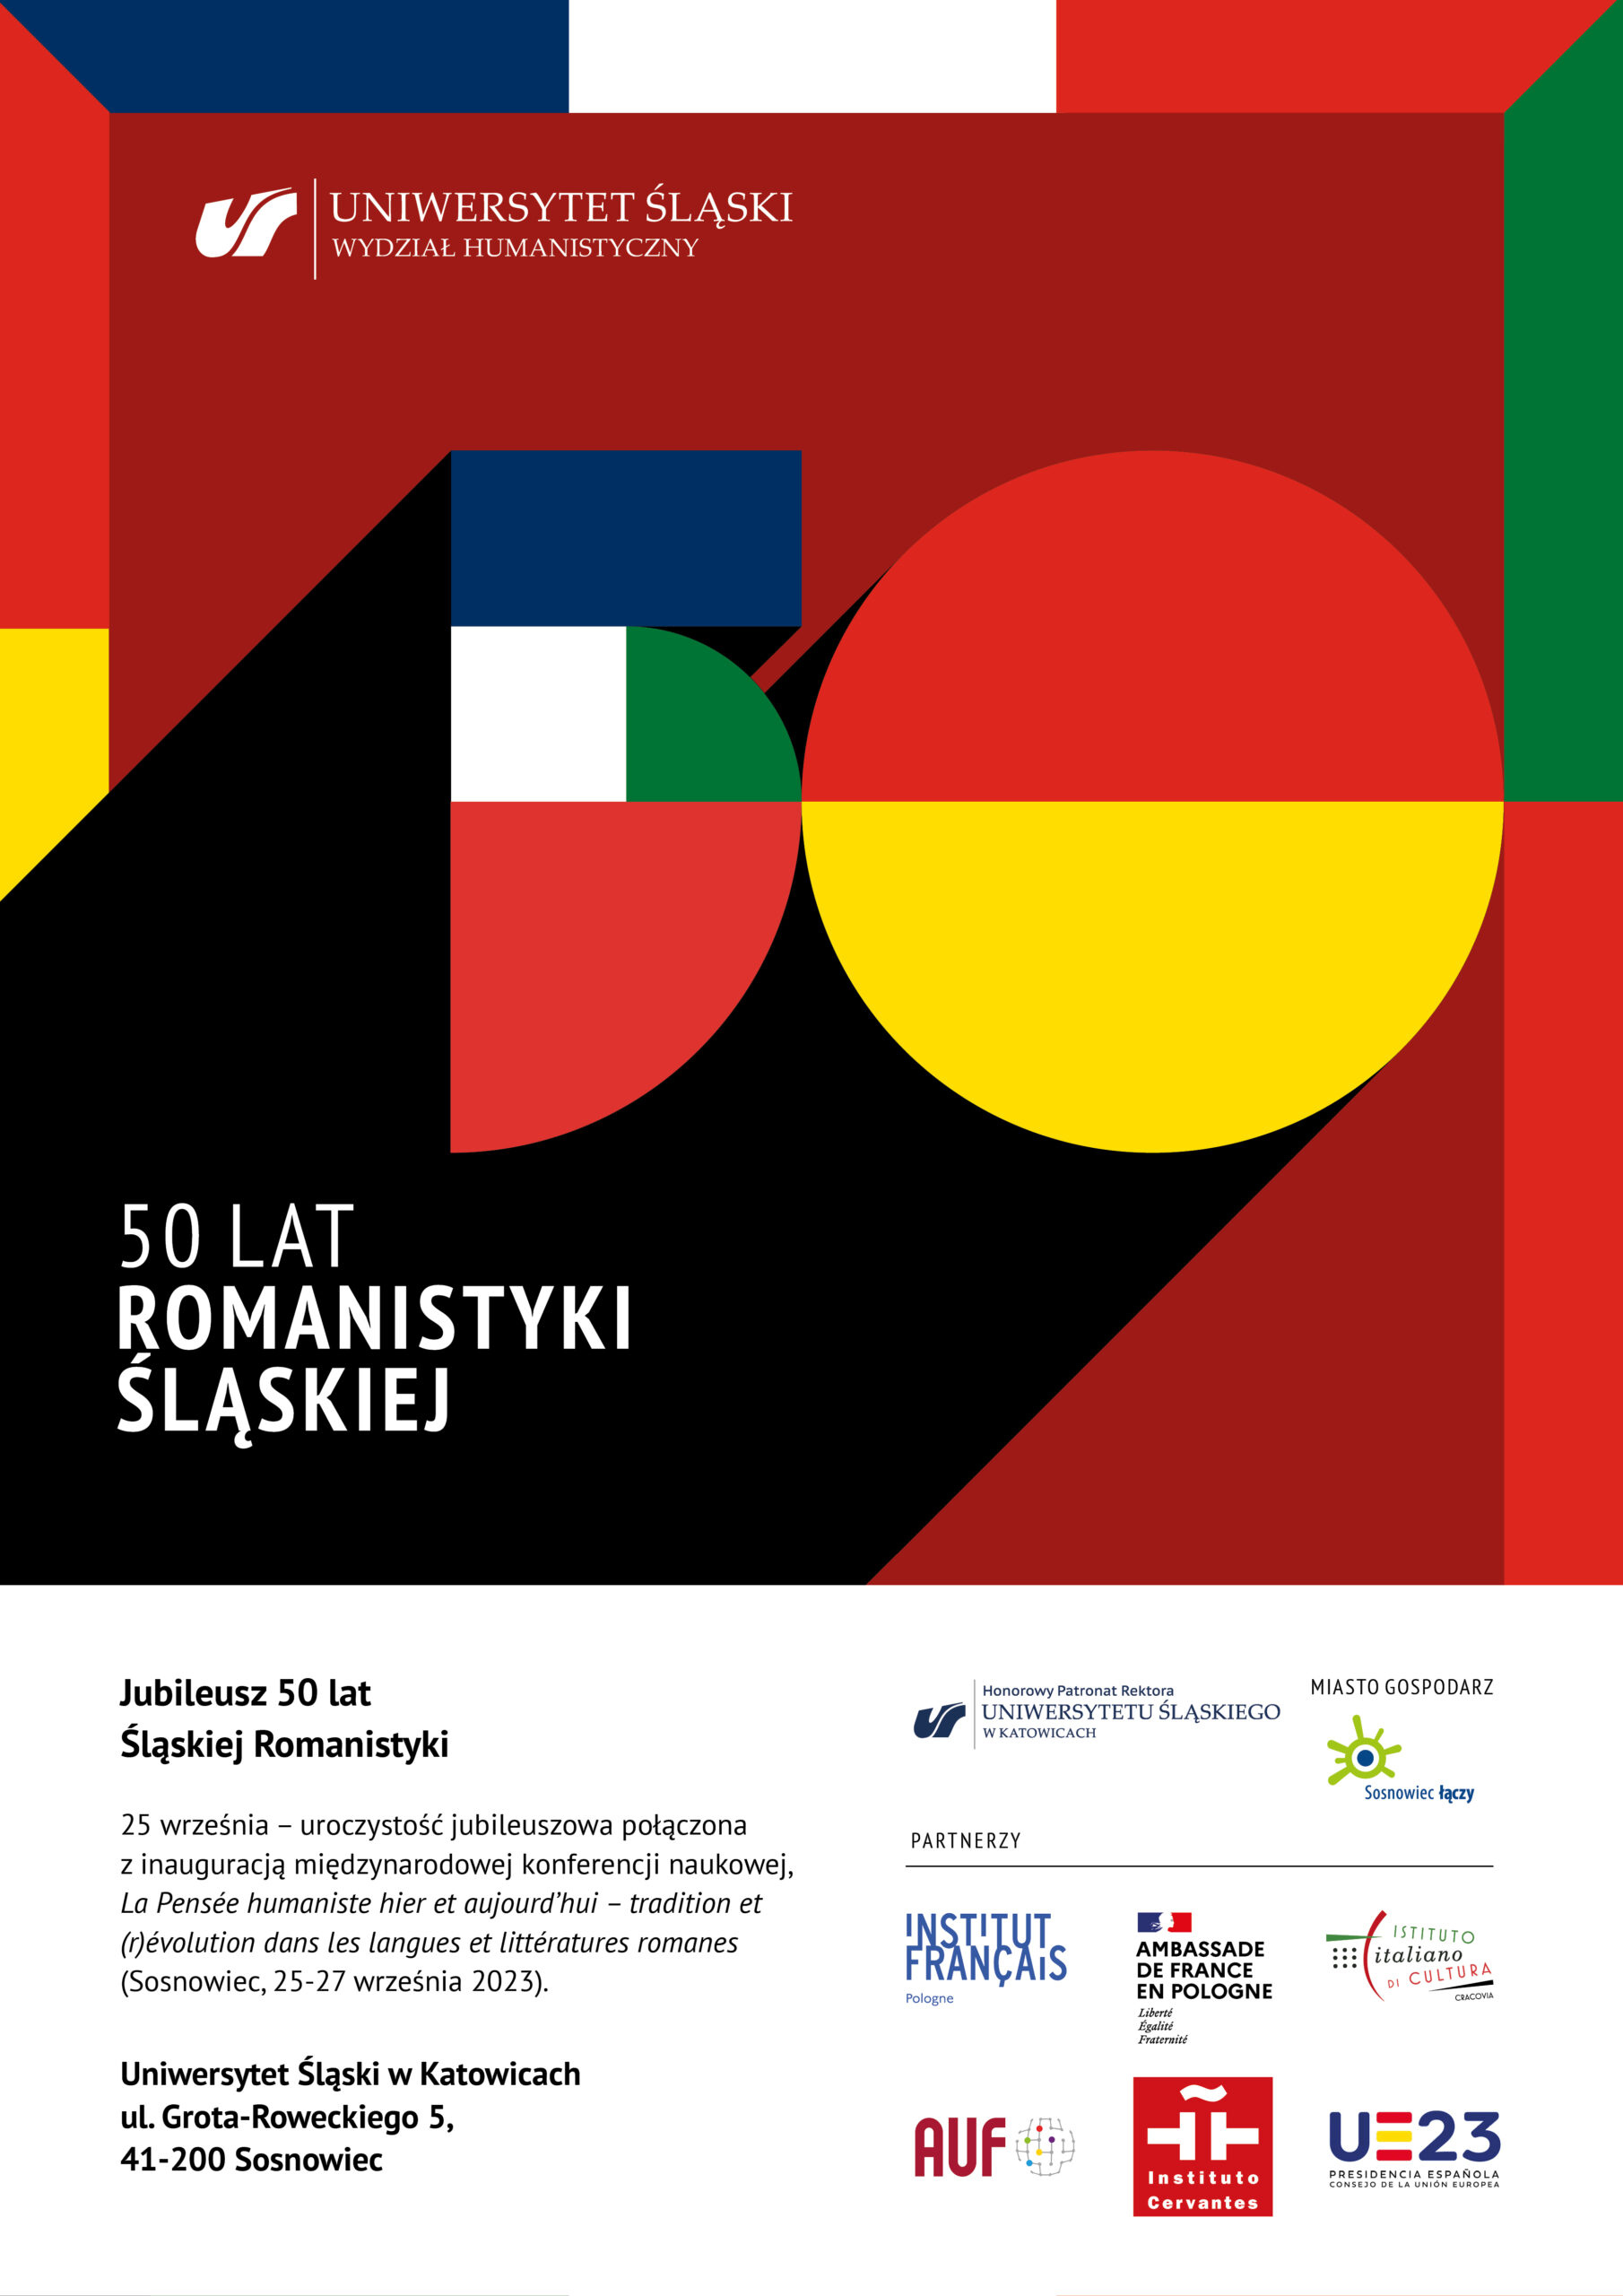 Plakat promujący obchody 50 lat istnienia śląskiej romanistyki